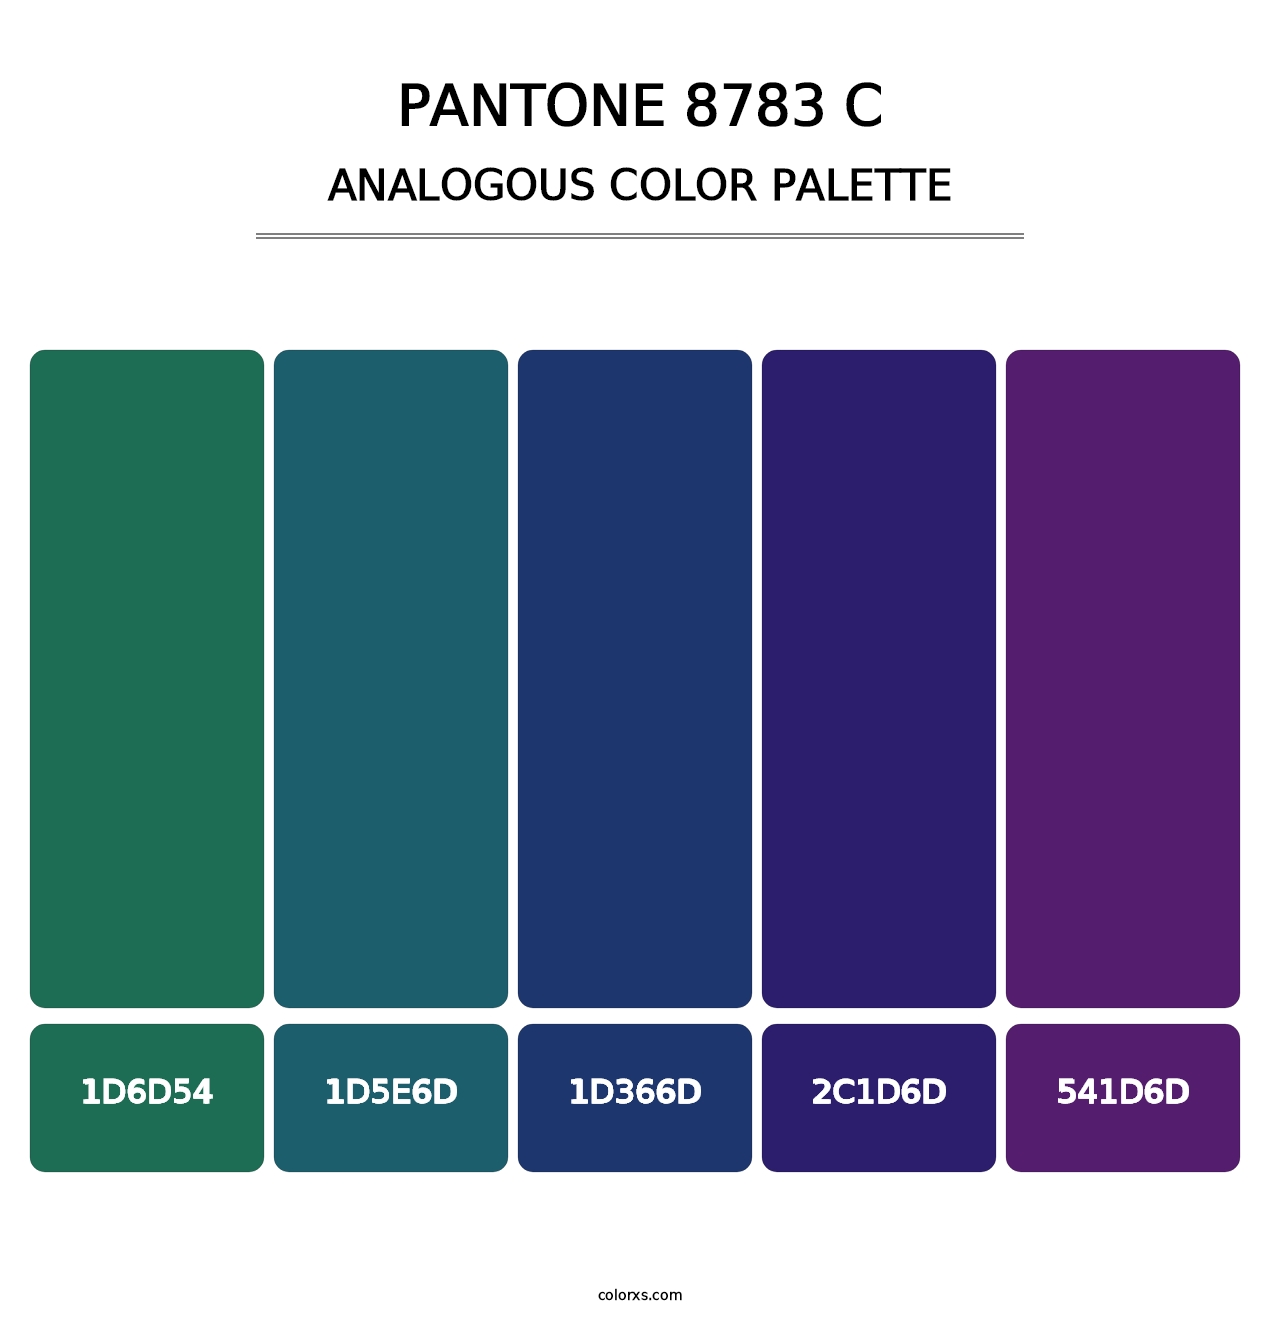 PANTONE 8783 C - Analogous Color Palette